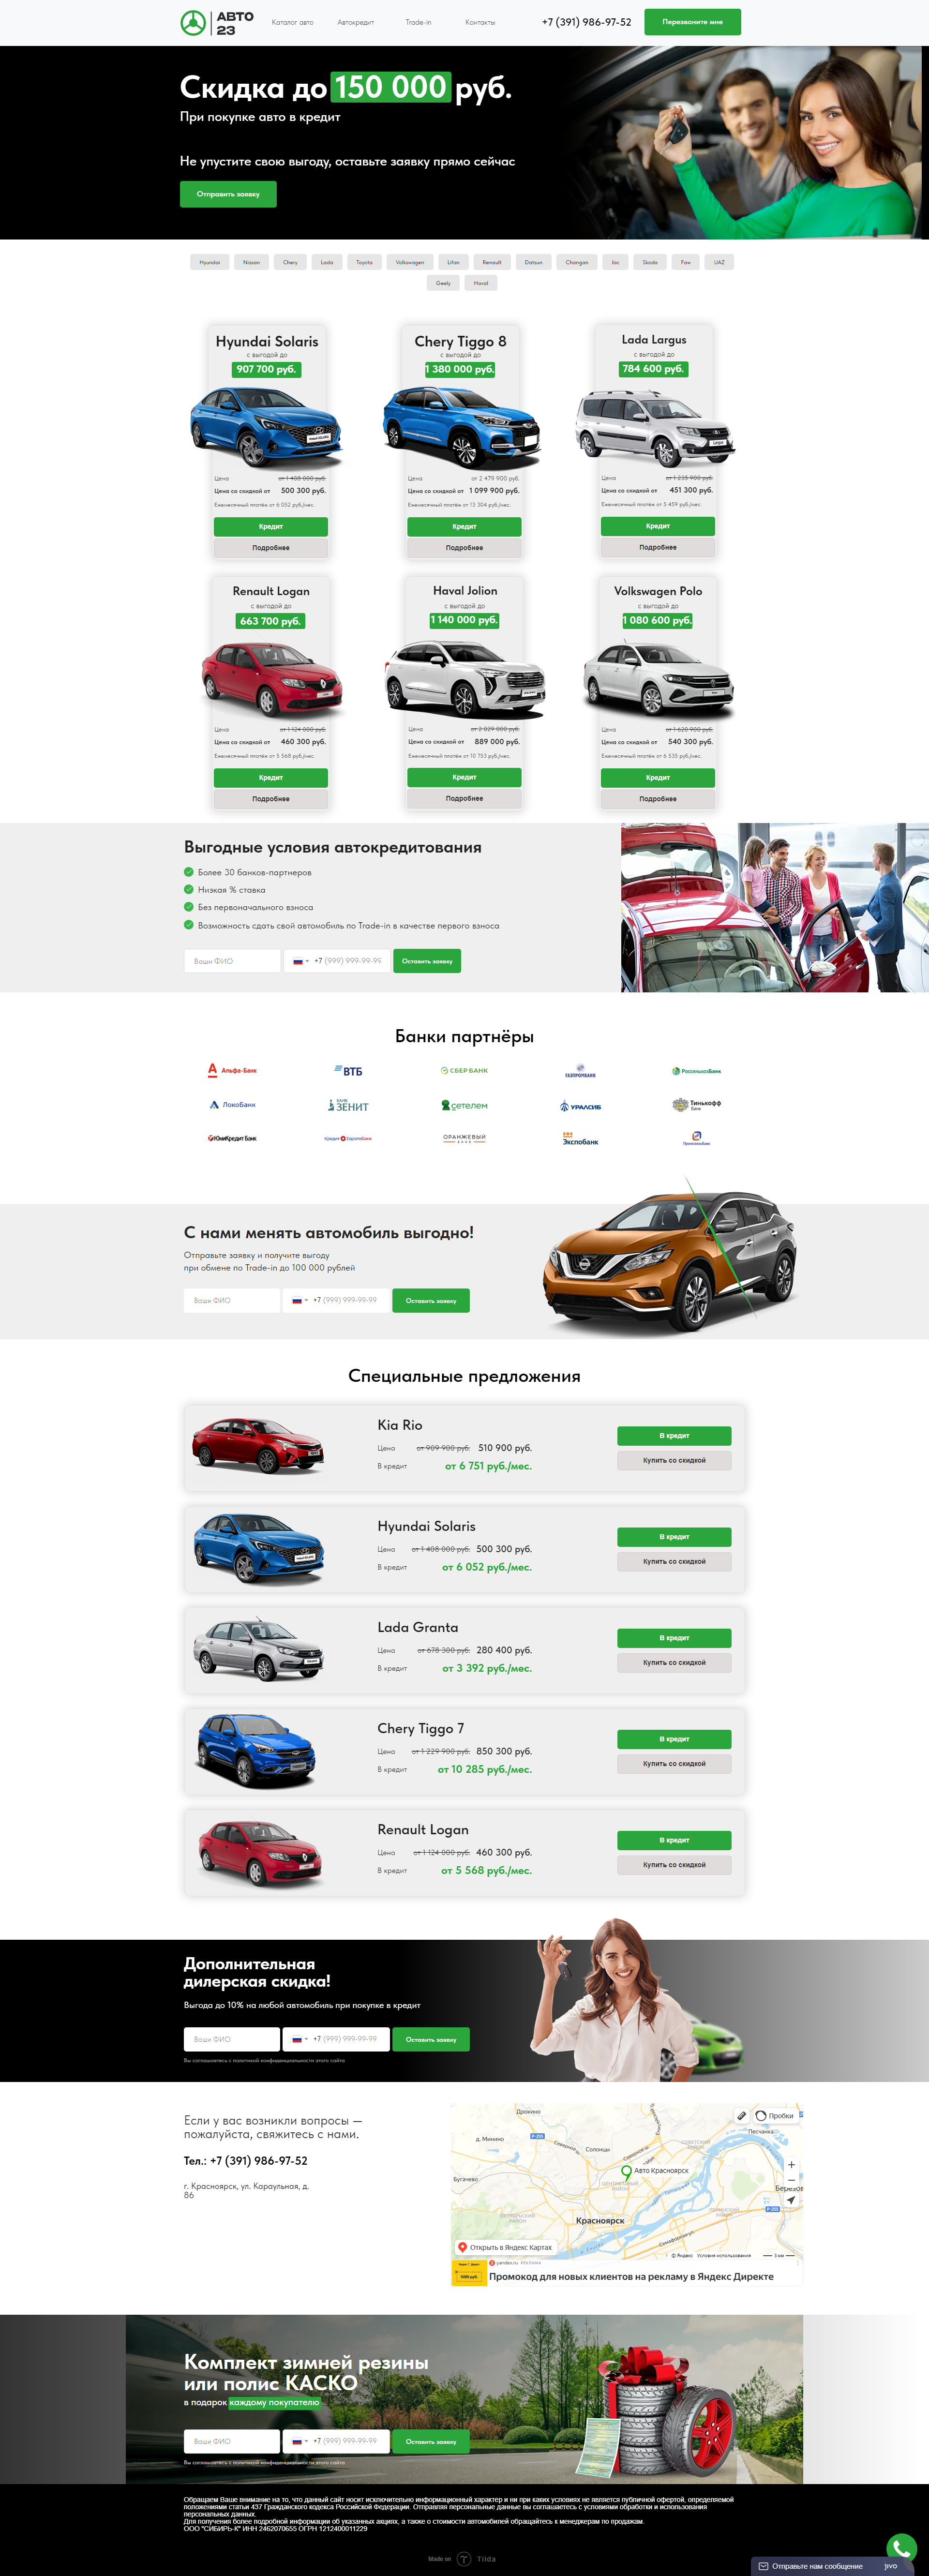 Пример avto-23.ru сайта из рекламной выдачи